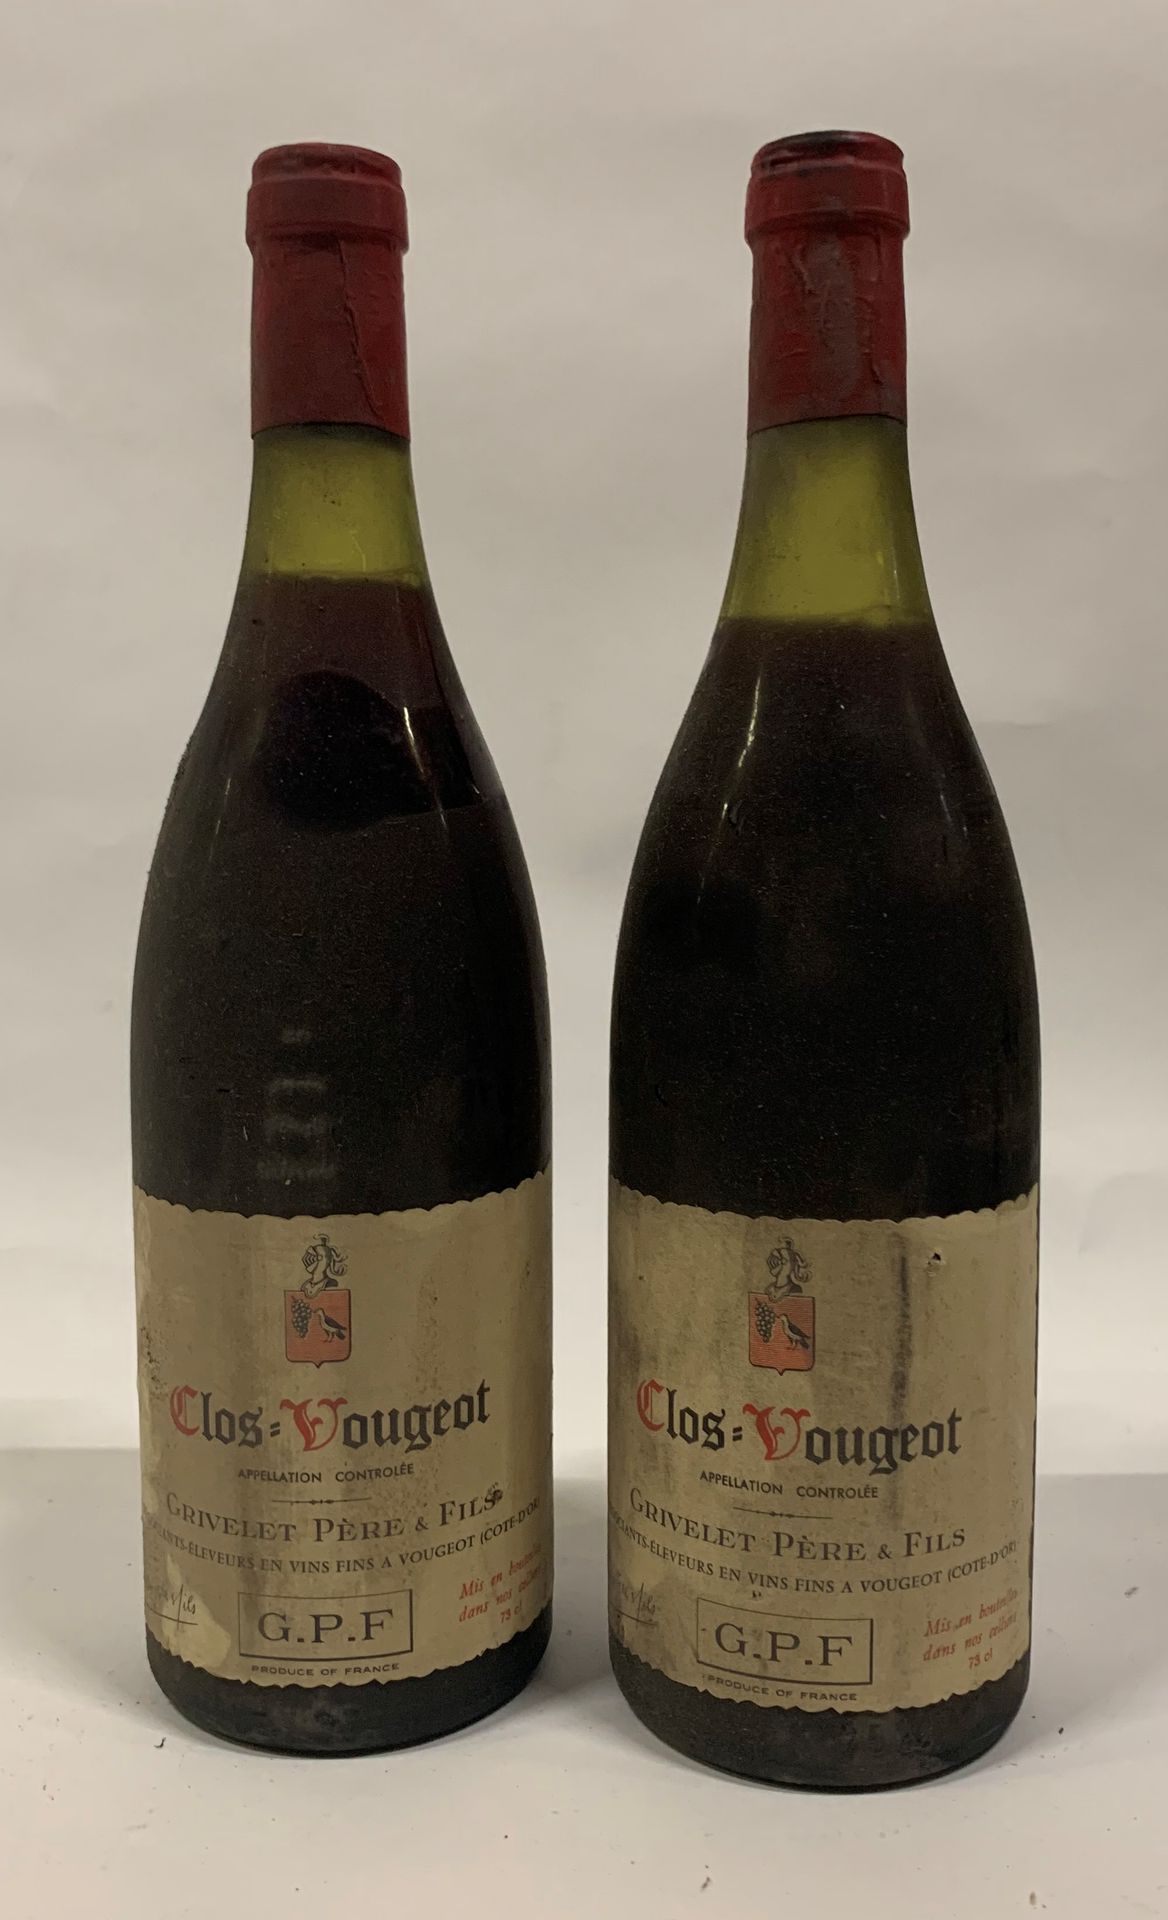 Null ● CLOS-VOUGEOT | Grivelet Père & Fils, 1972

6 bouteilles (LB, 2MB, 2B, V -&hellip;